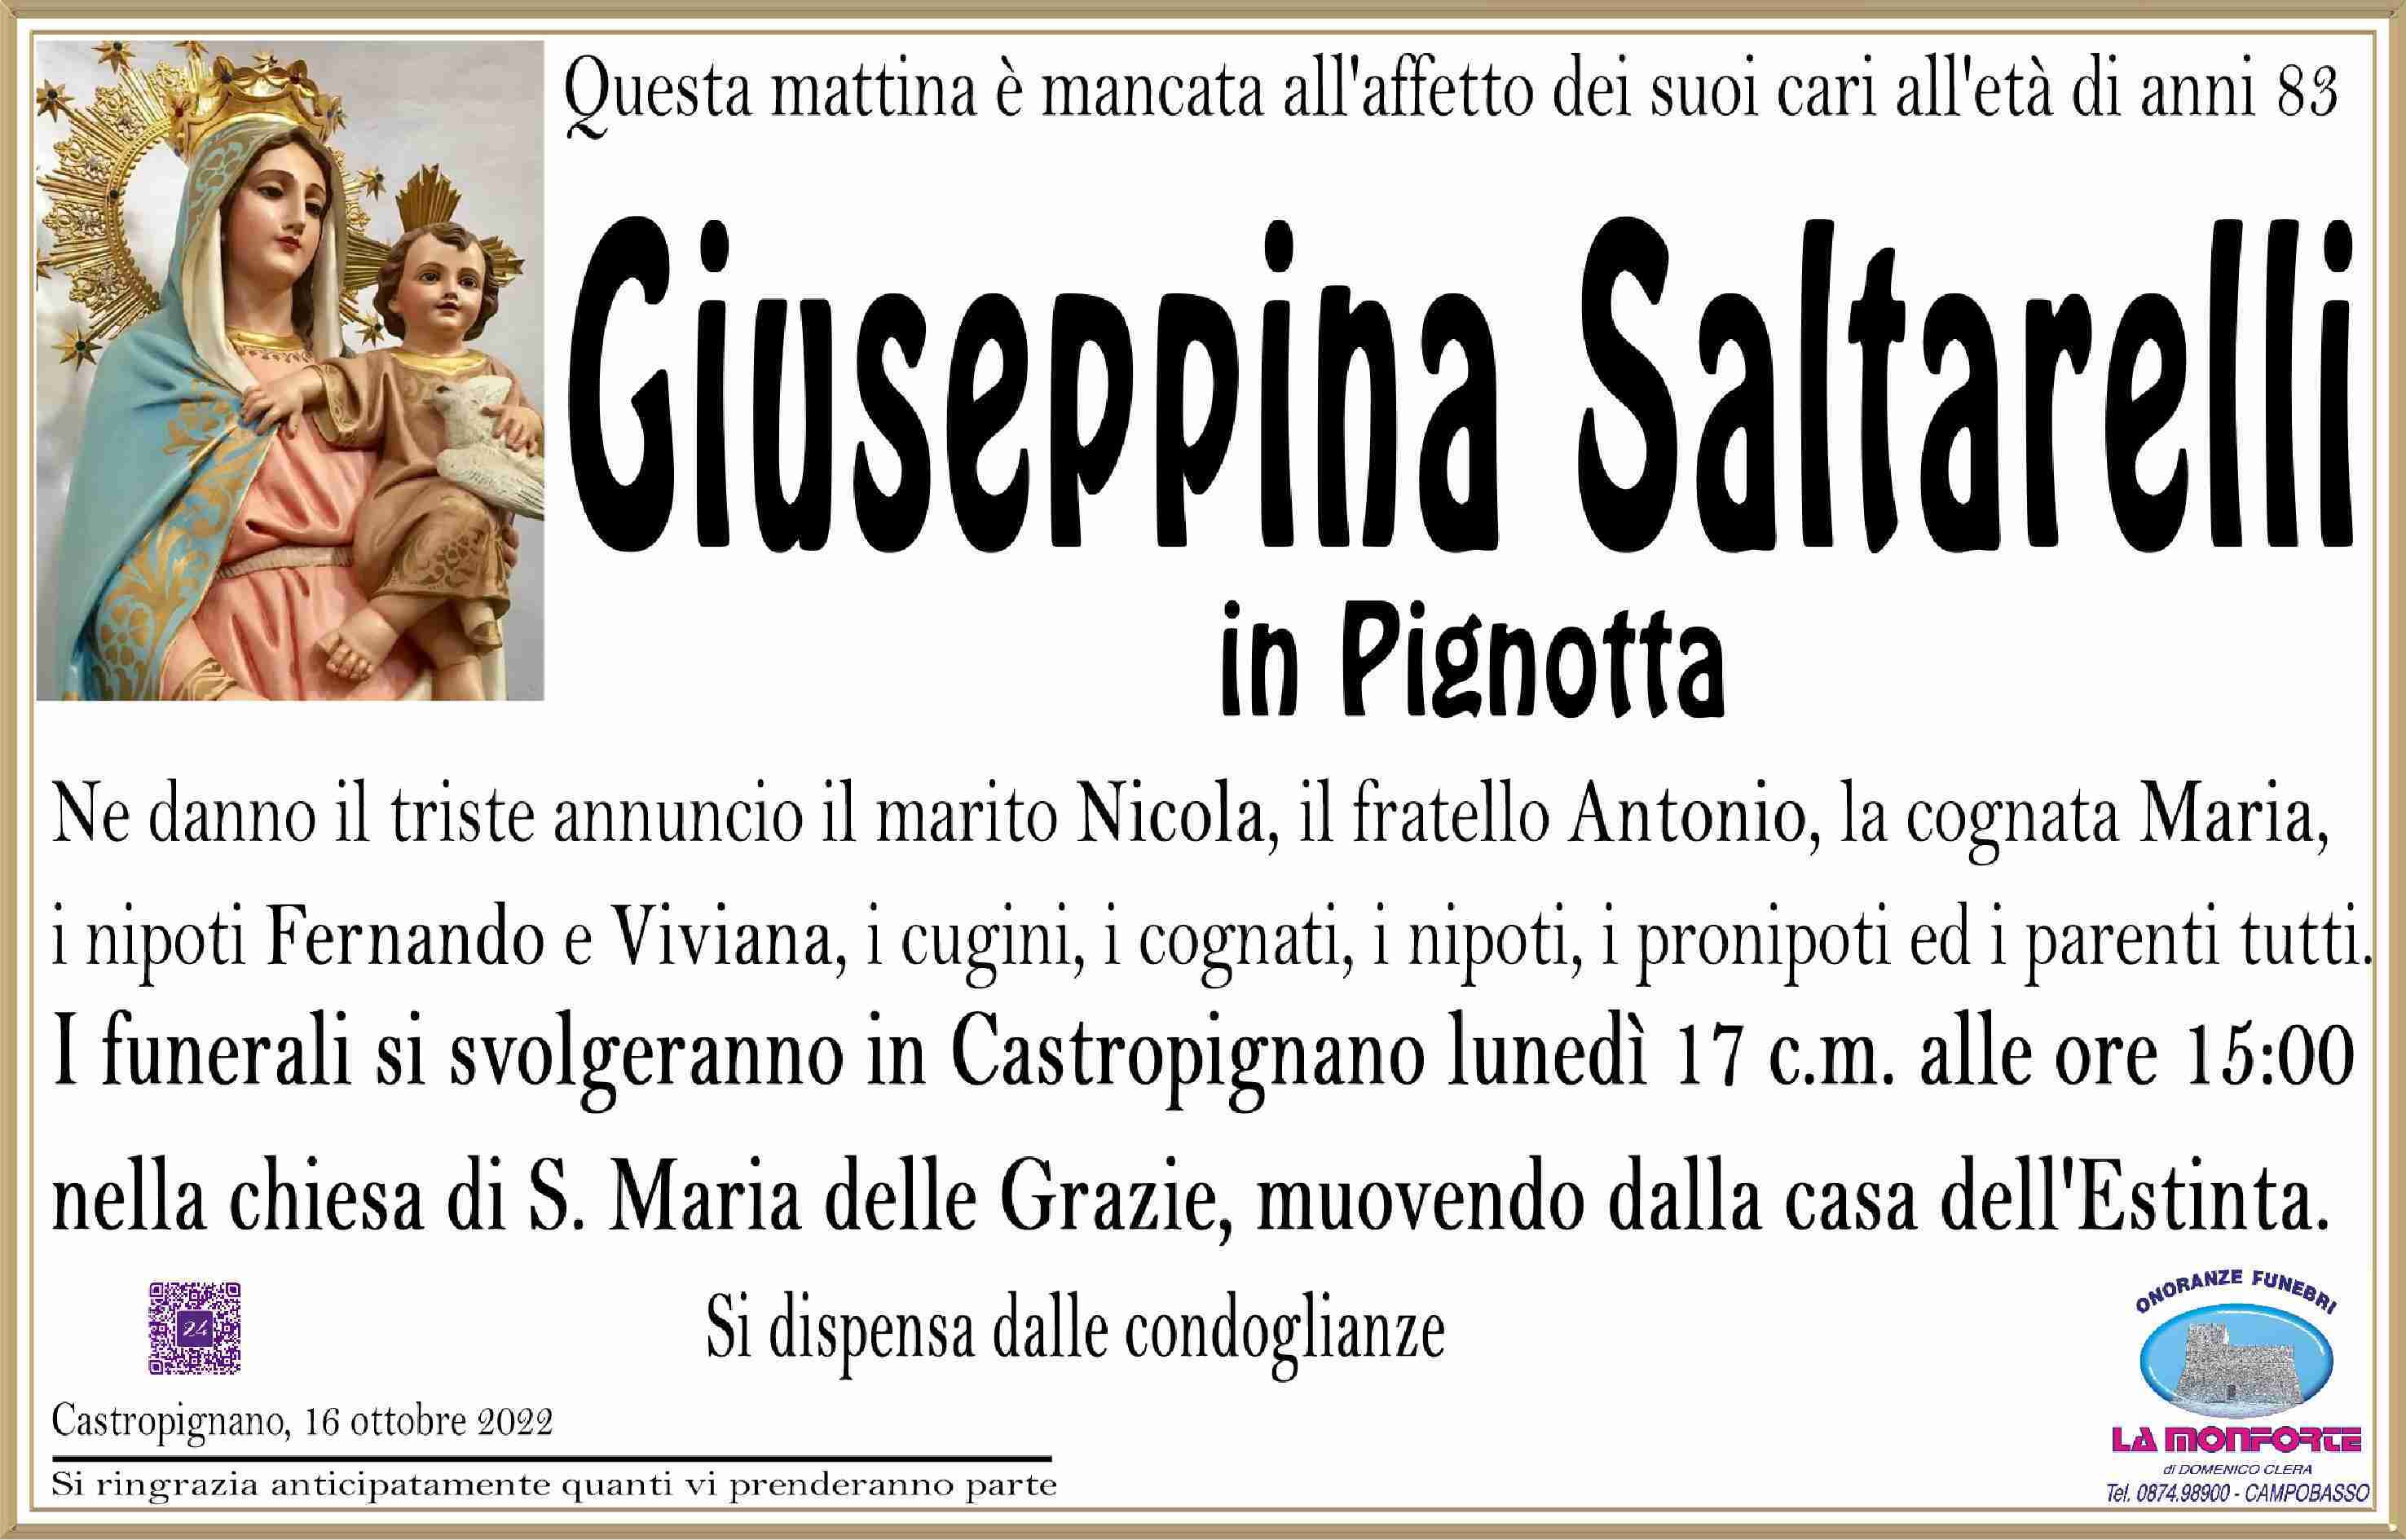 Giuseppina Saltarelli